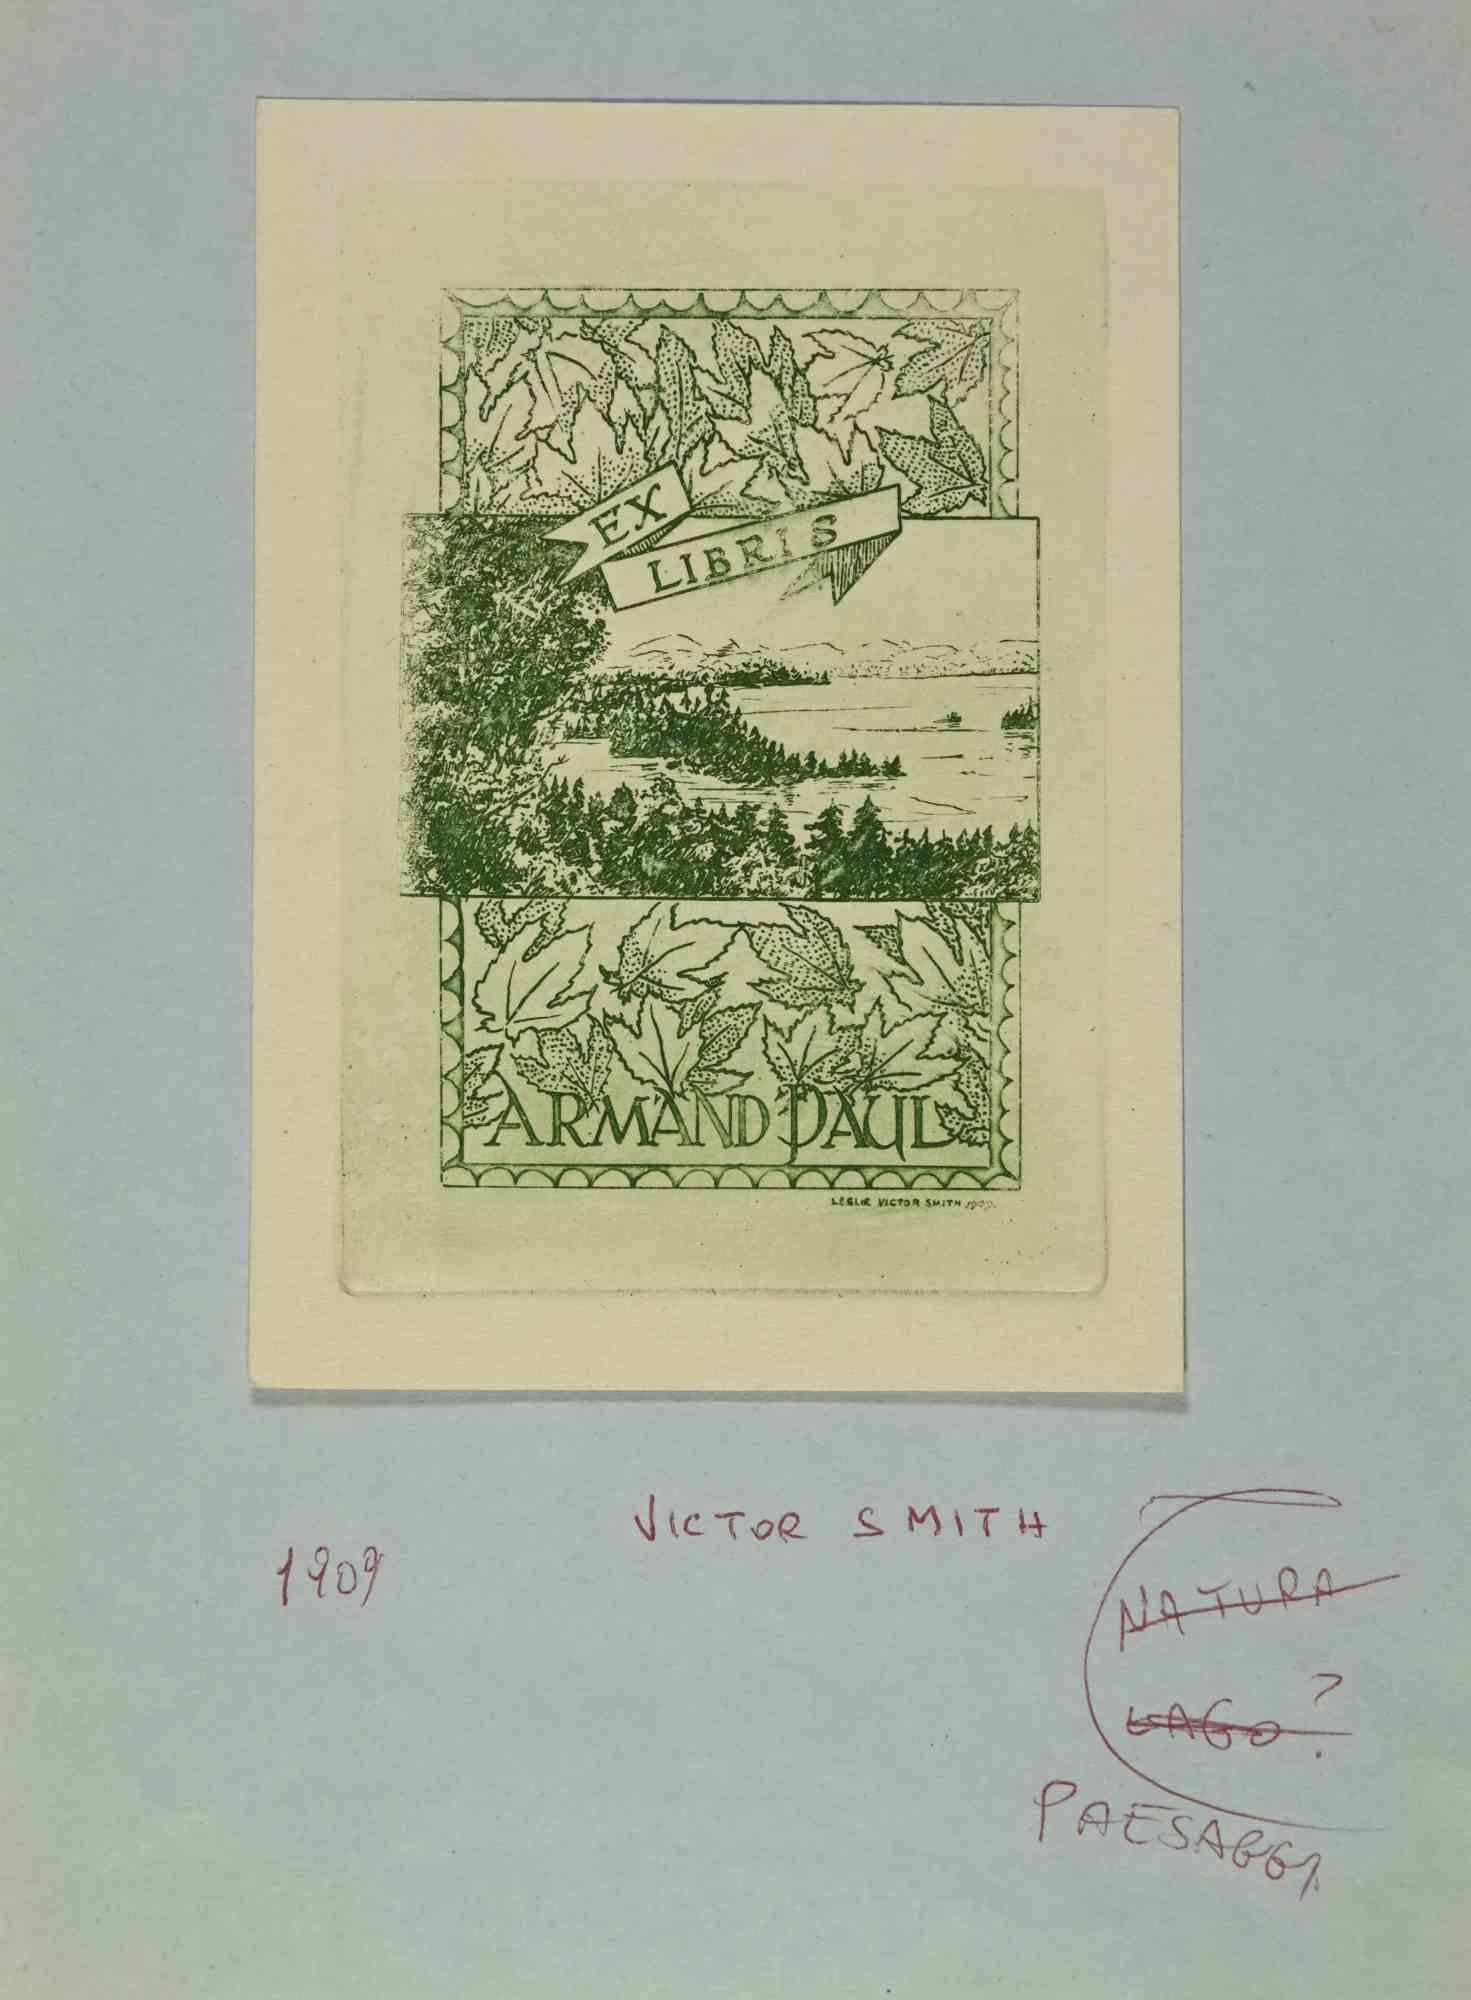 Ex-Libris - Armand Paul ist ein Kunstwerk des Künstlers Leslie Victor Smith aus dem Jahr 1909. 

Farbiger Holzschnitt auf Elfenbeinpapier.  In der Platte signiert und am unteren rechten Rand datiert. 

Das Werk ist auf farbigen Karton geklebt.